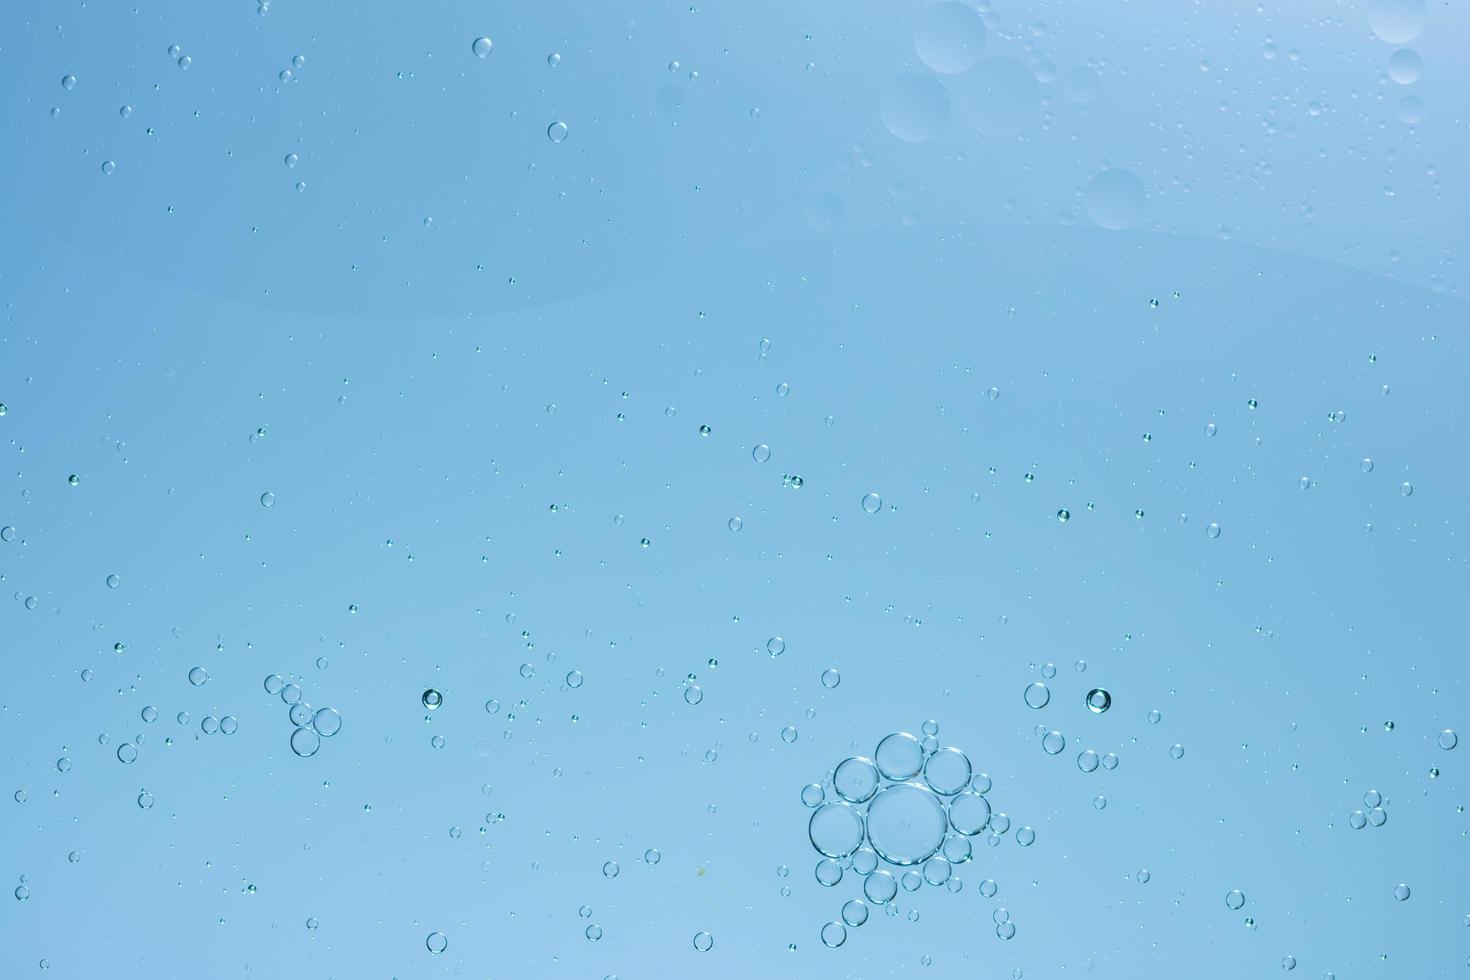 vatten och olja, abstrakt bakgrund foto